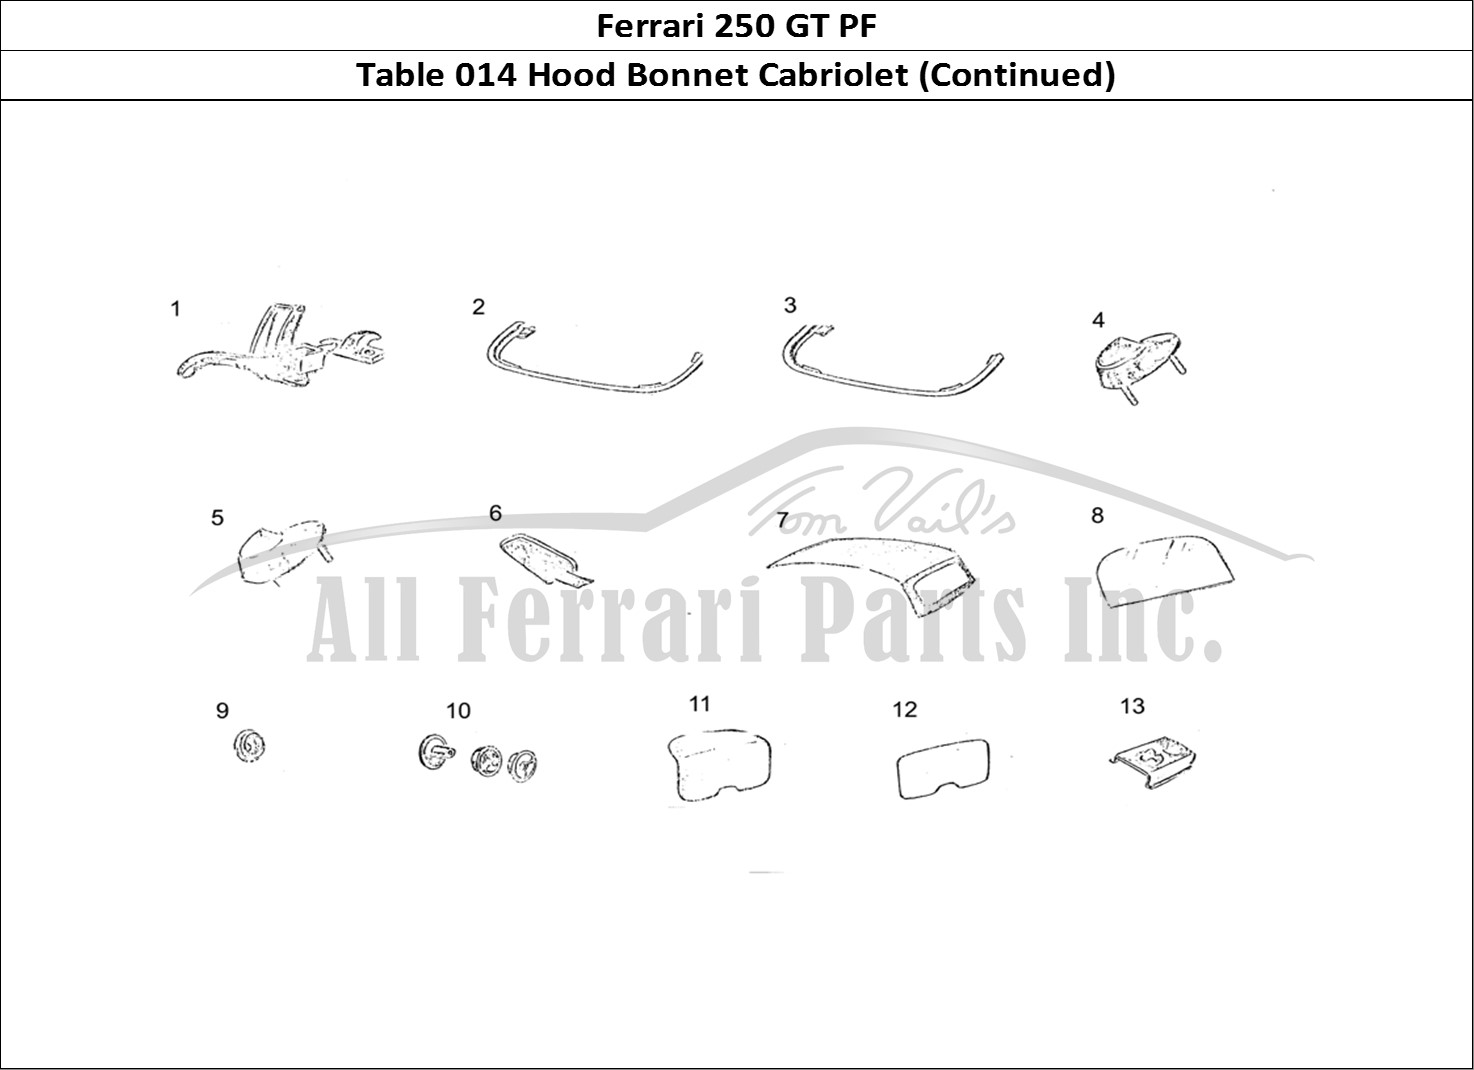 Ferrari Parts Ferrari 250 GT (Coachwork) Page 014 Cabriolet Hood (continued